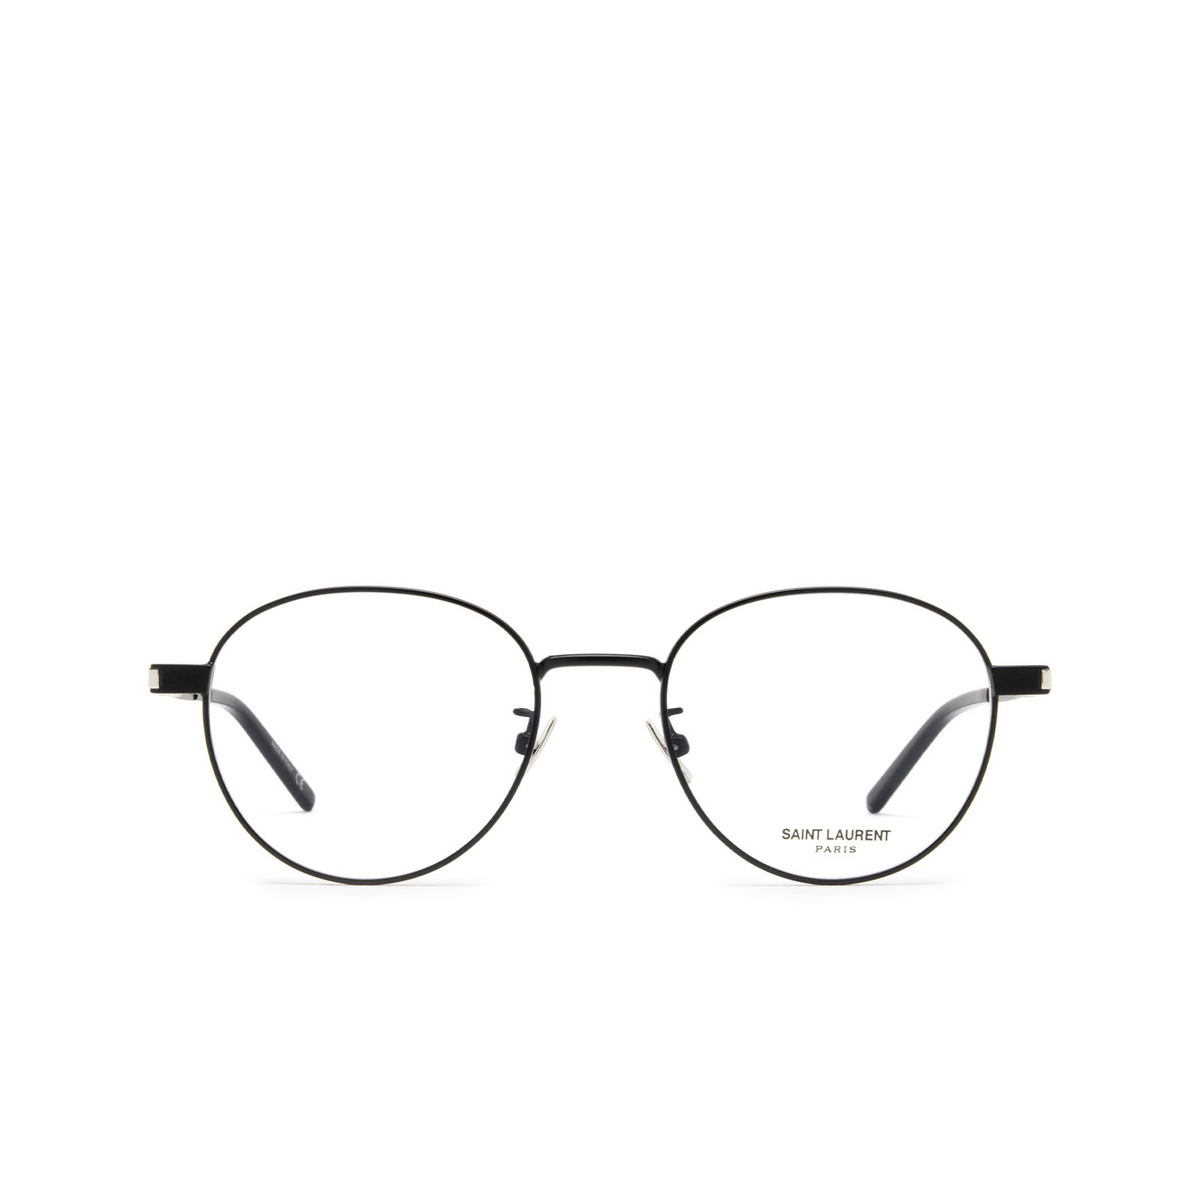 Saint Laurent® Round Eyeglasses: SL 532 color 001 Black - front view